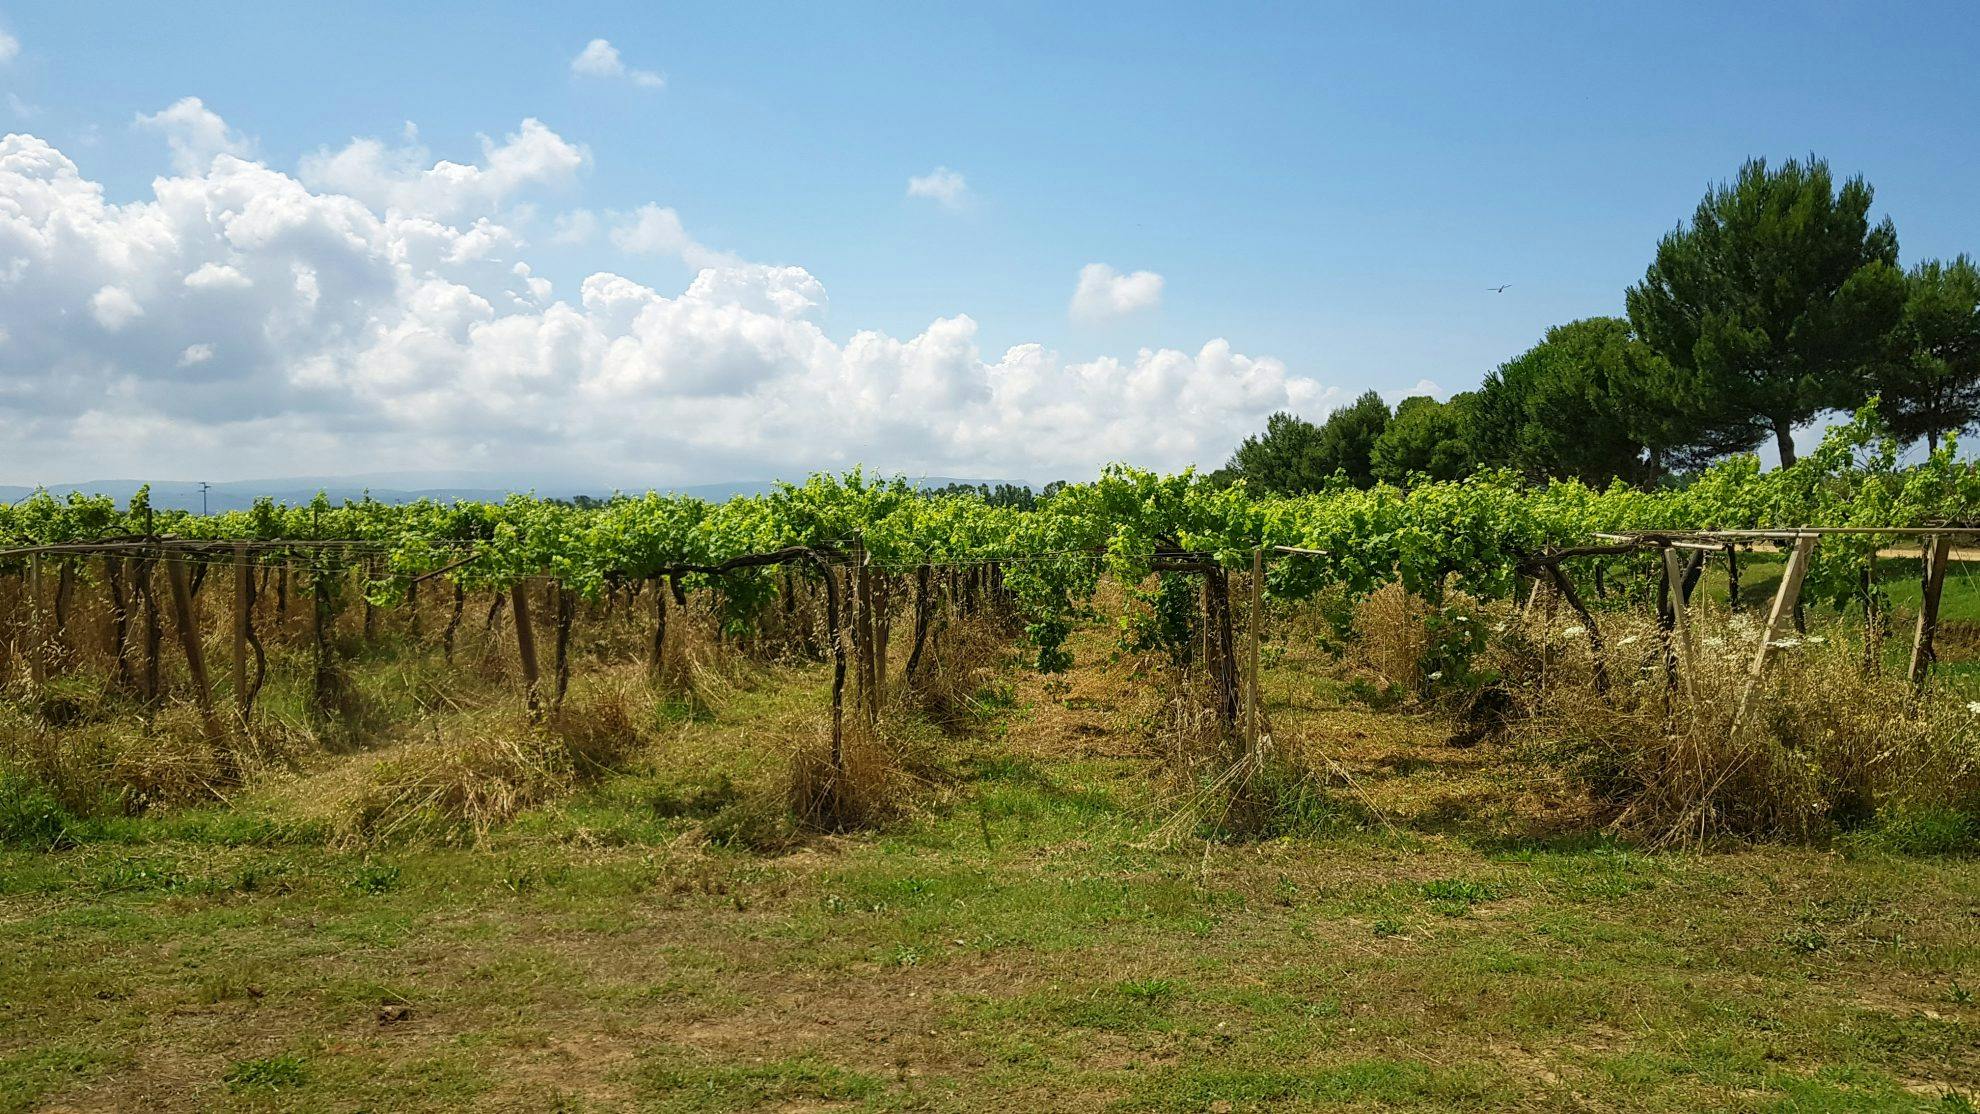 Bland kooperativ, korkar och vingårdar på Sardinien